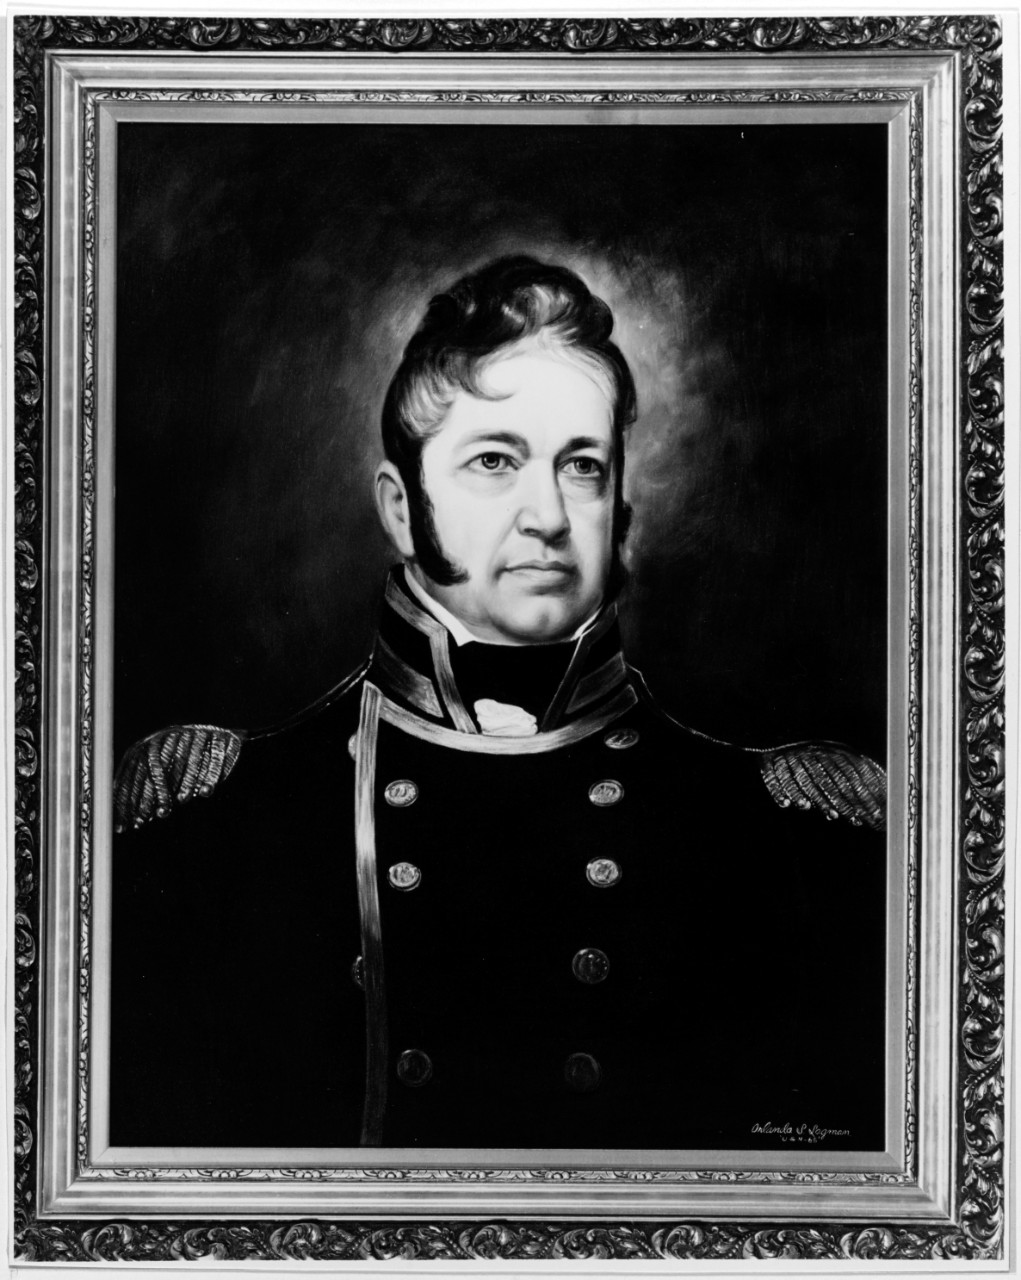 Commodore William Bainbridge, USN